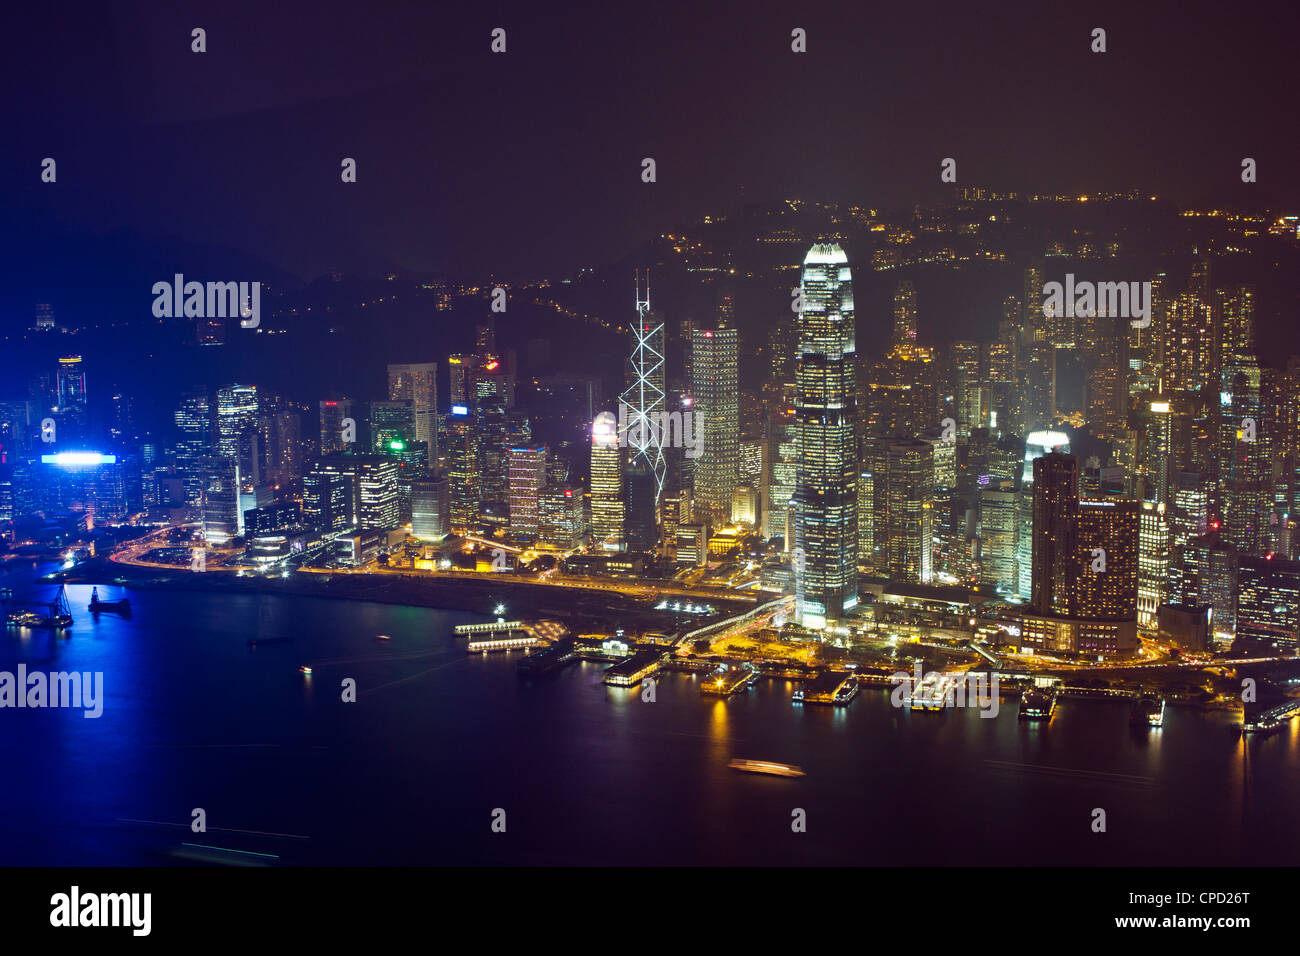 High angle view of Central, le quartier principal des finances, de nuit, l'île de Hong Kong, Hong Kong, Chine, Asie Banque D'Images